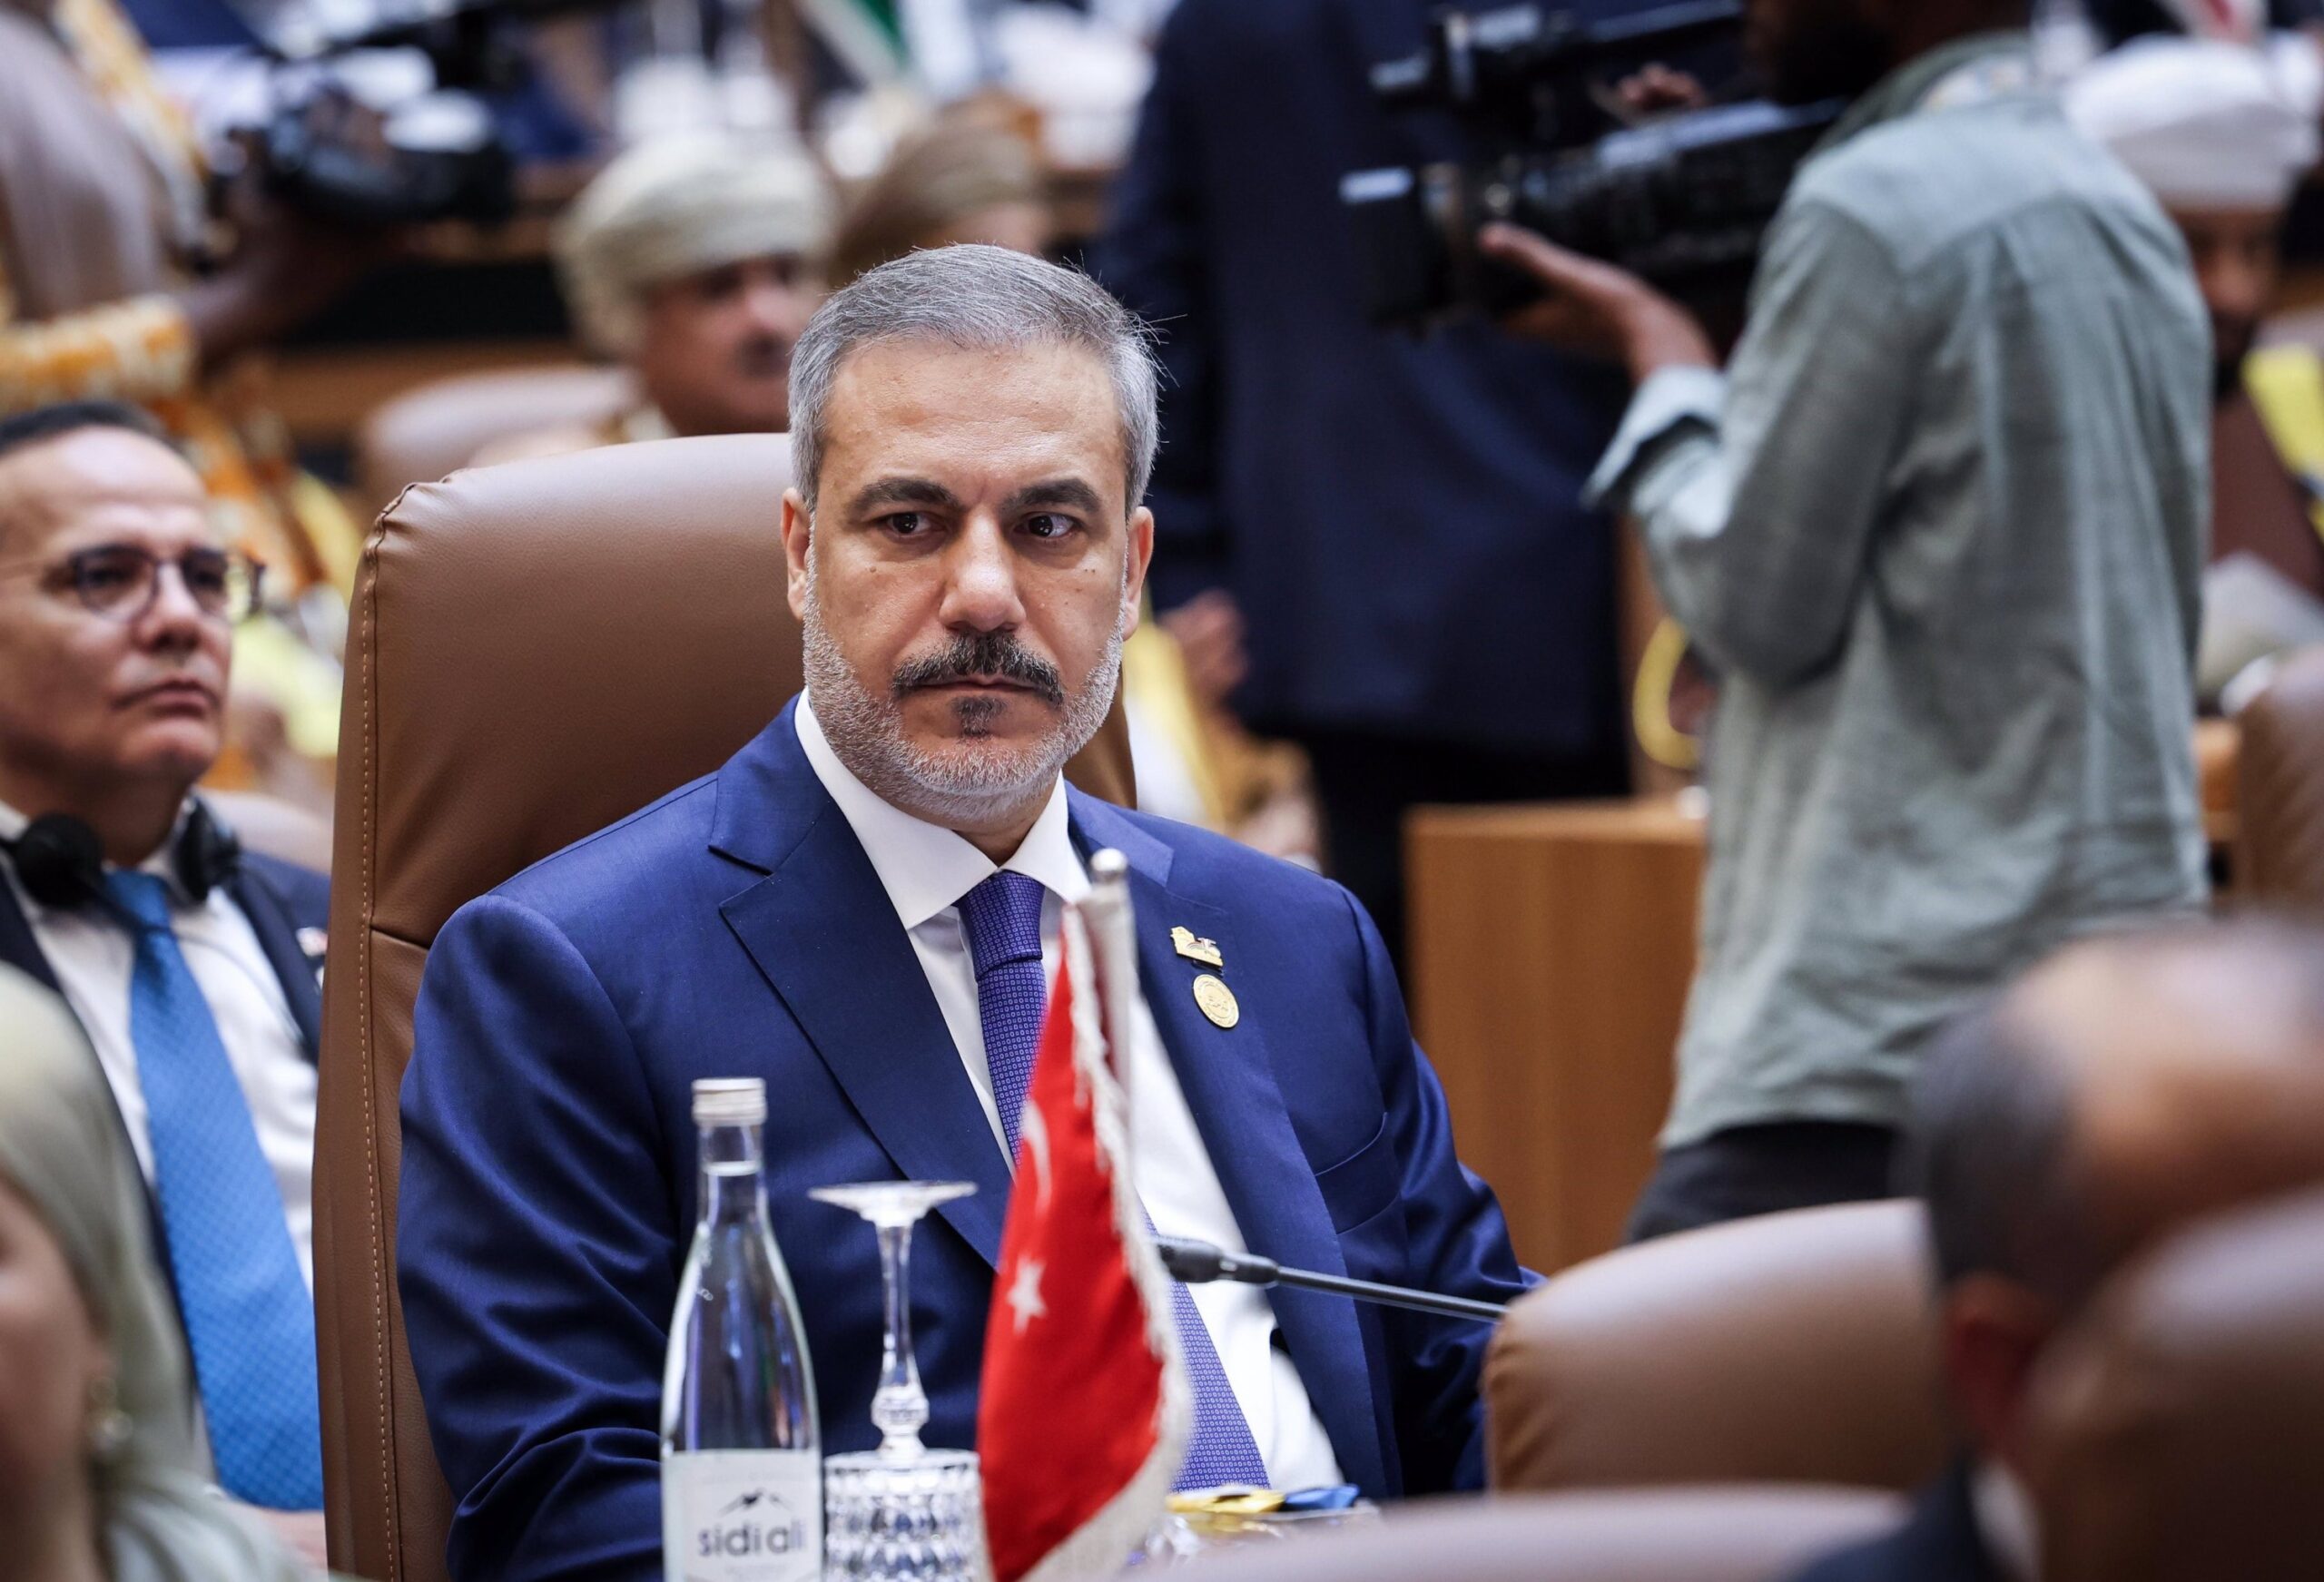  Ministri i Jashtëm turk kërkon bashkimin global të muslimanëve në mbështetje të palestinezëve